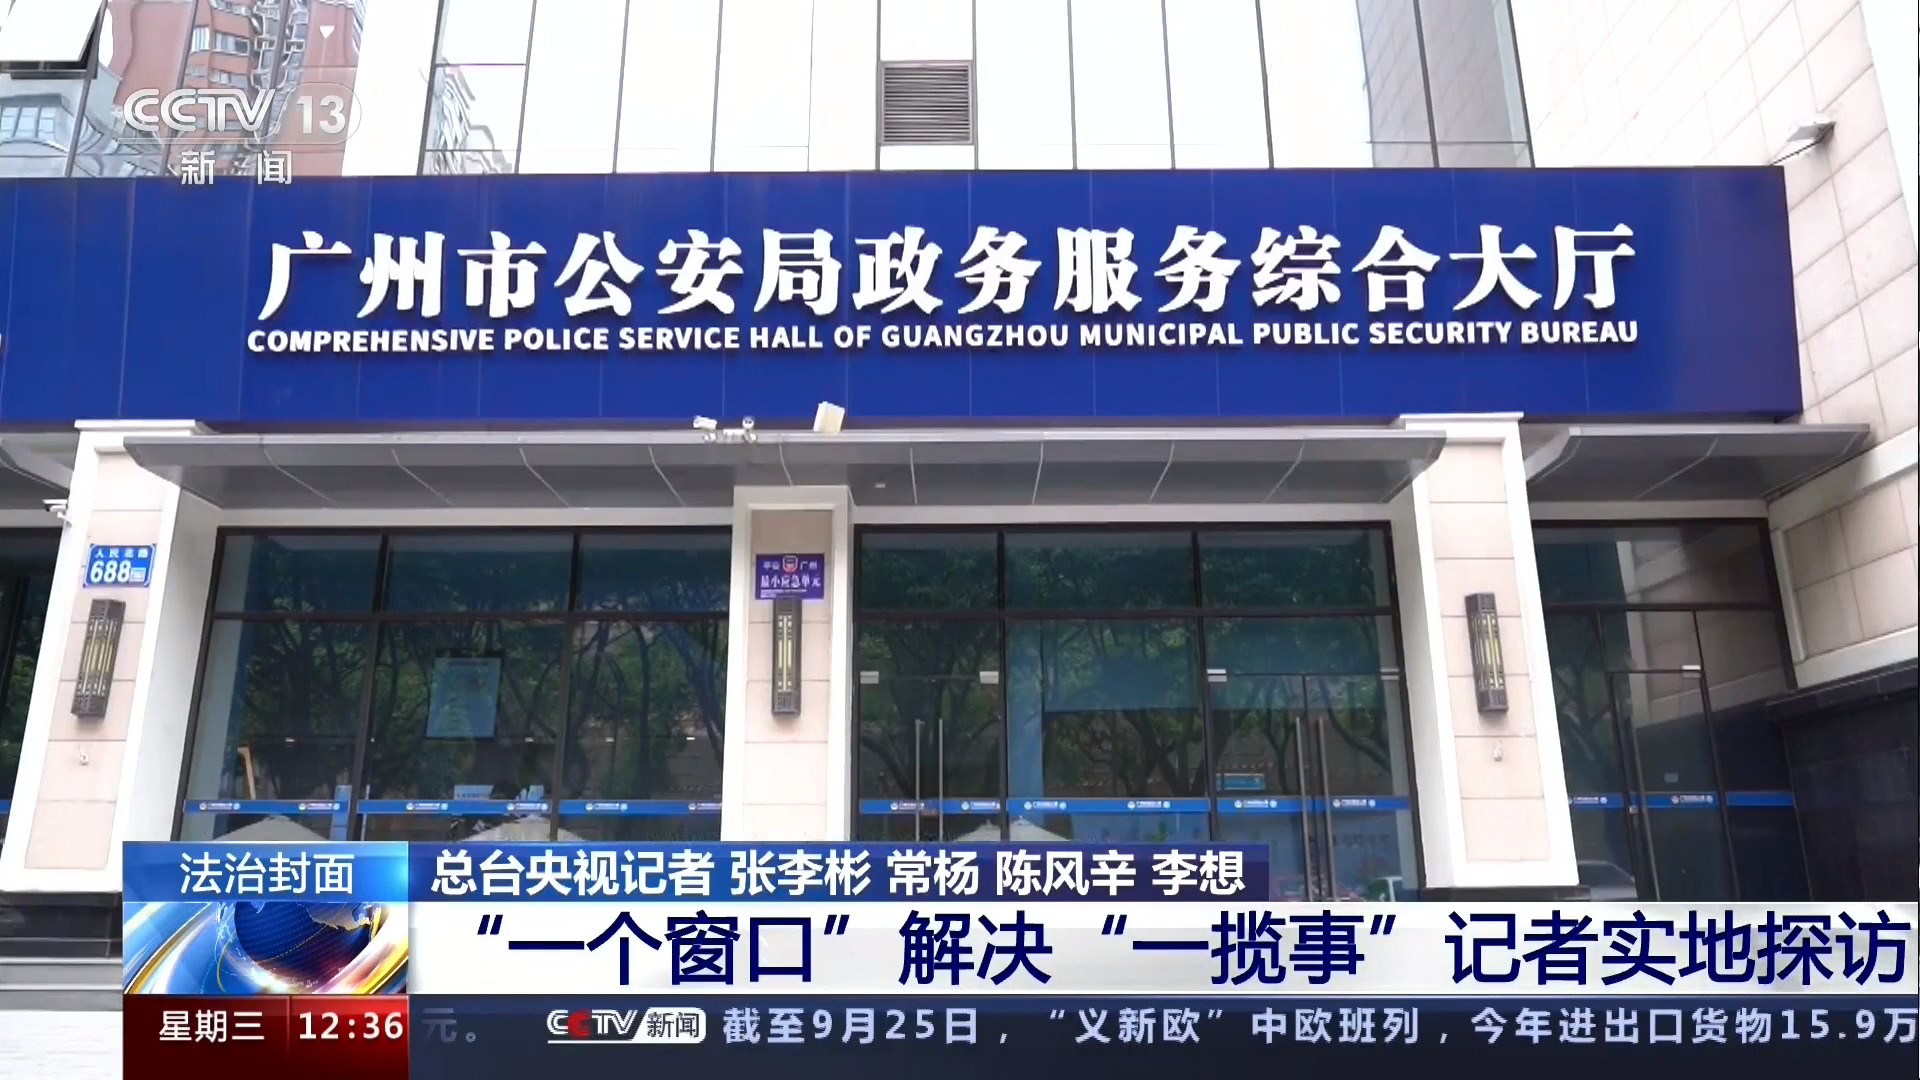 中央电视台CCTV-13新闻频道 法治在线 “一个窗口”解决“一揽事”记者实地探访